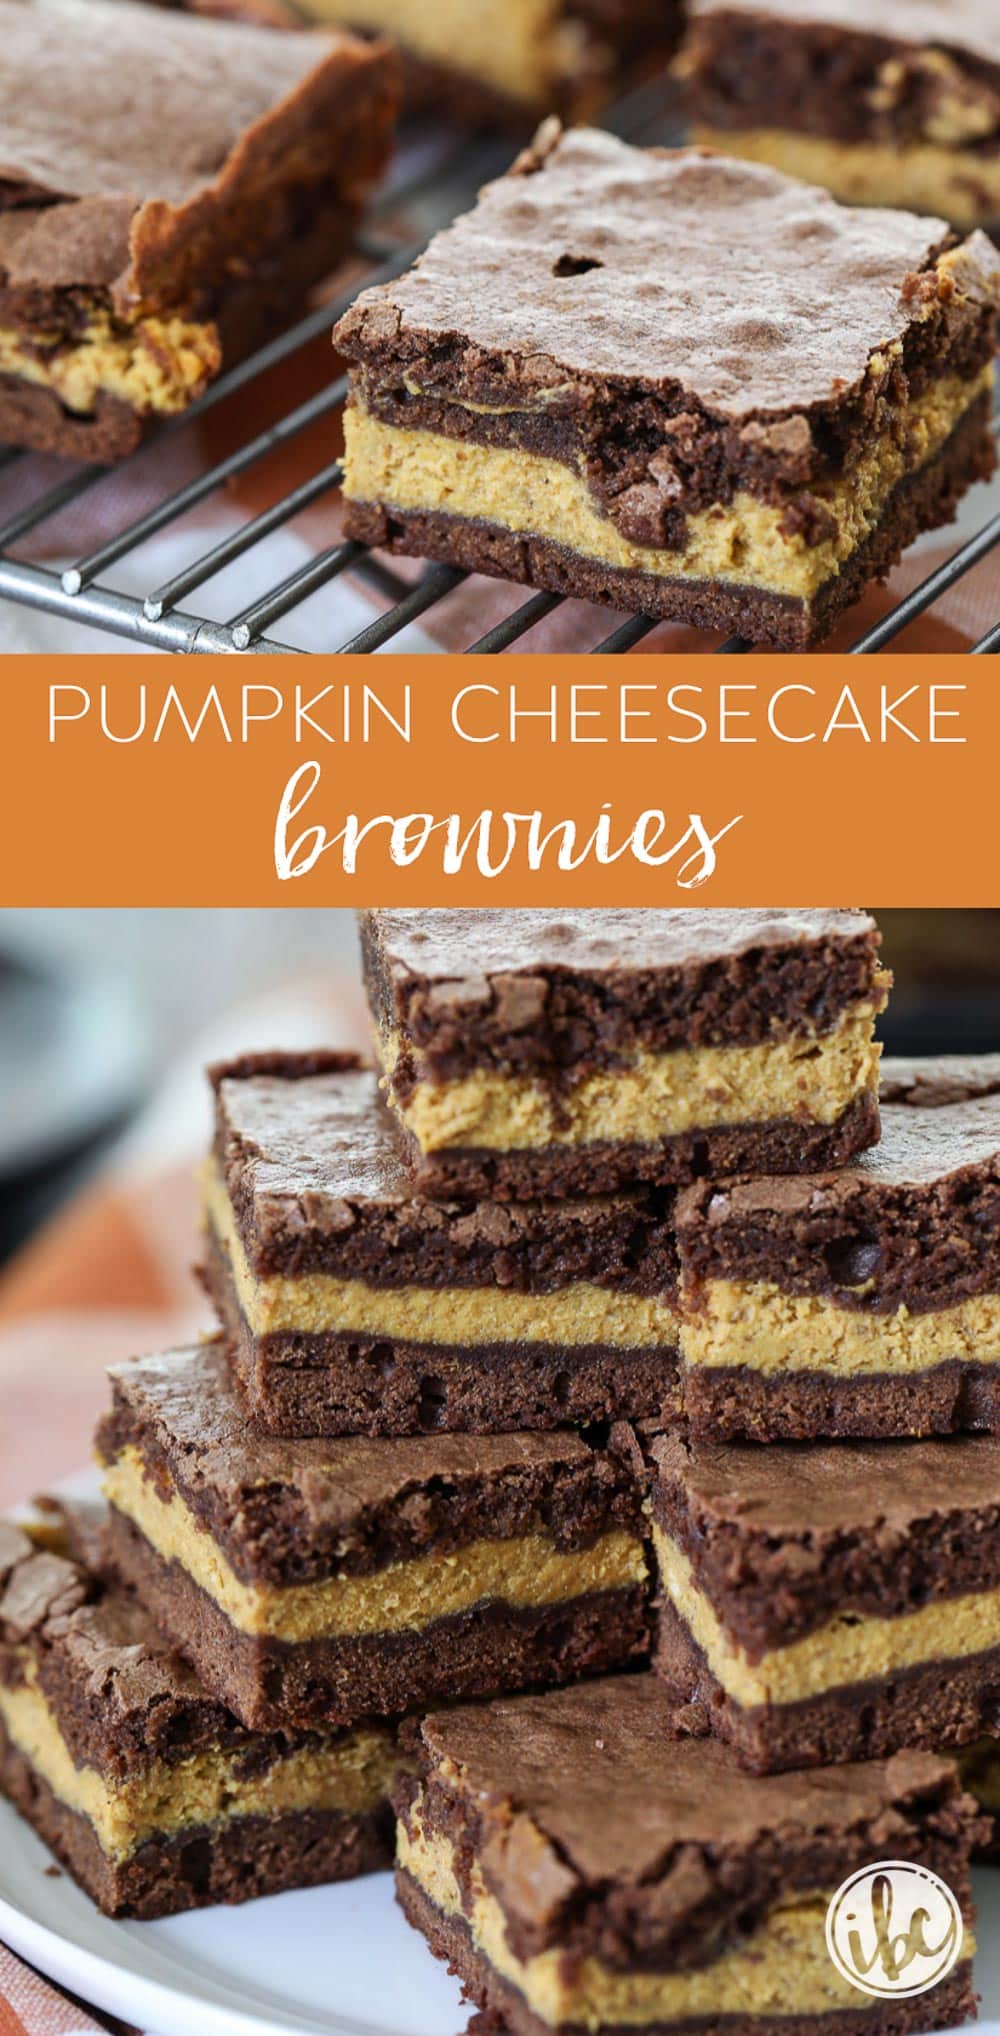 These Pumpkin Cheesecake Brownies are the perfect fall dessert! #pumpkin #brownies #pumpkinspice #fall #baking #dessert #recipe